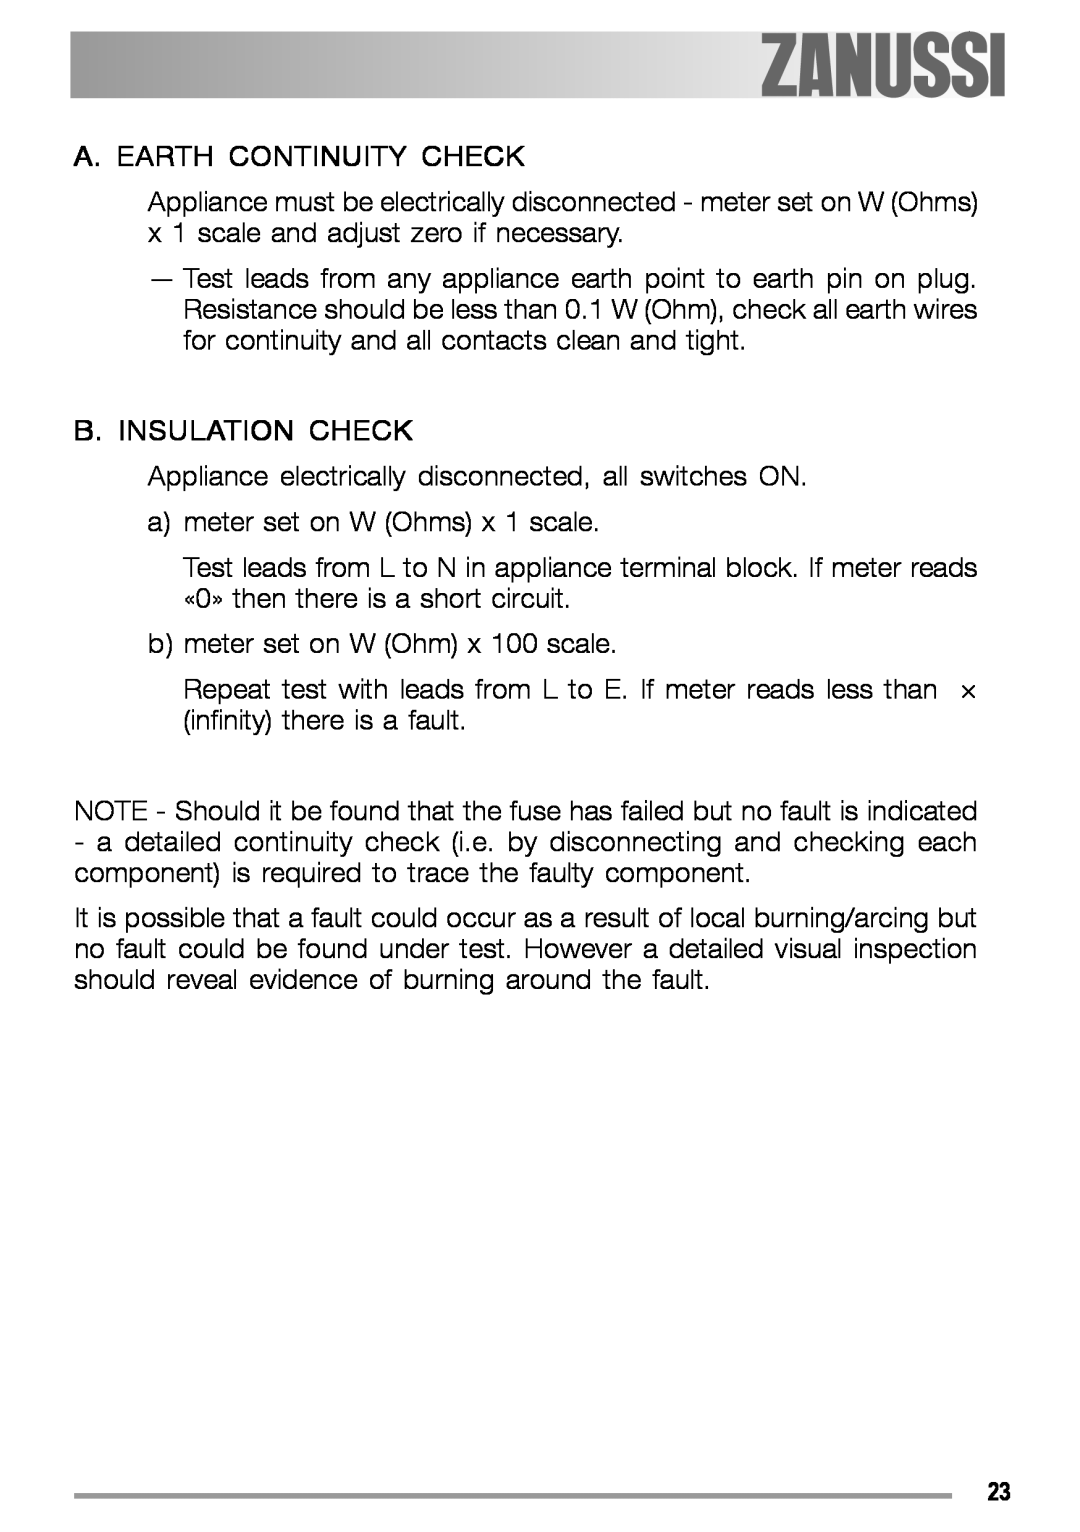 Zanussi ZGS 322 manual A. Earth Continuity Check, B. Insulation Check 